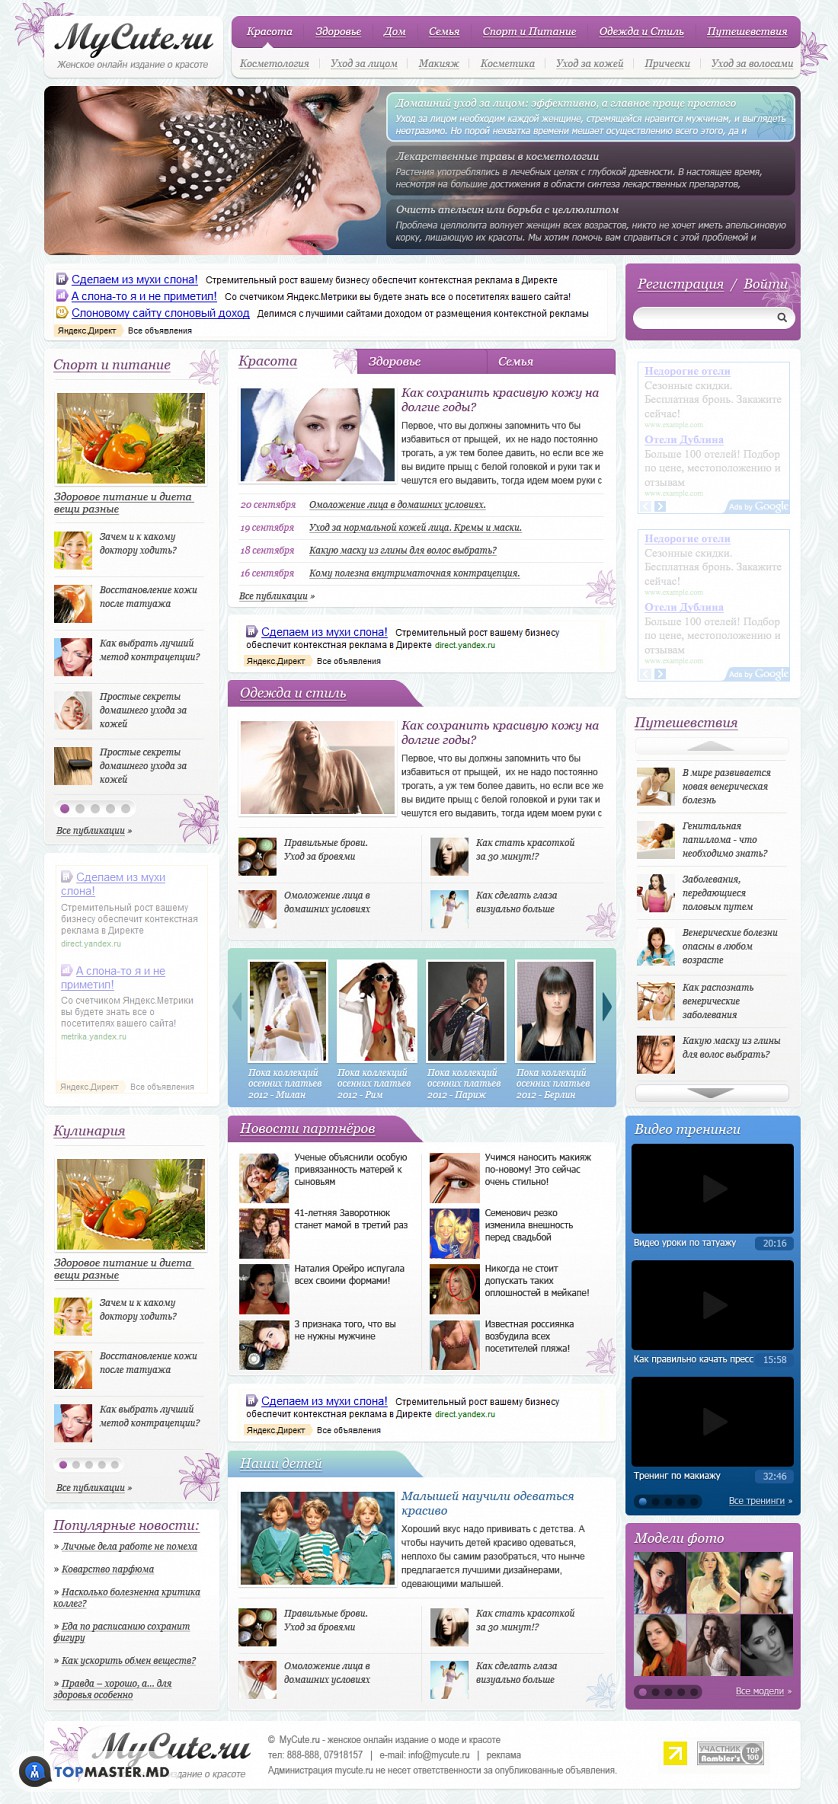 Женский онлайн журнал о моде и здоровье. изображение 1